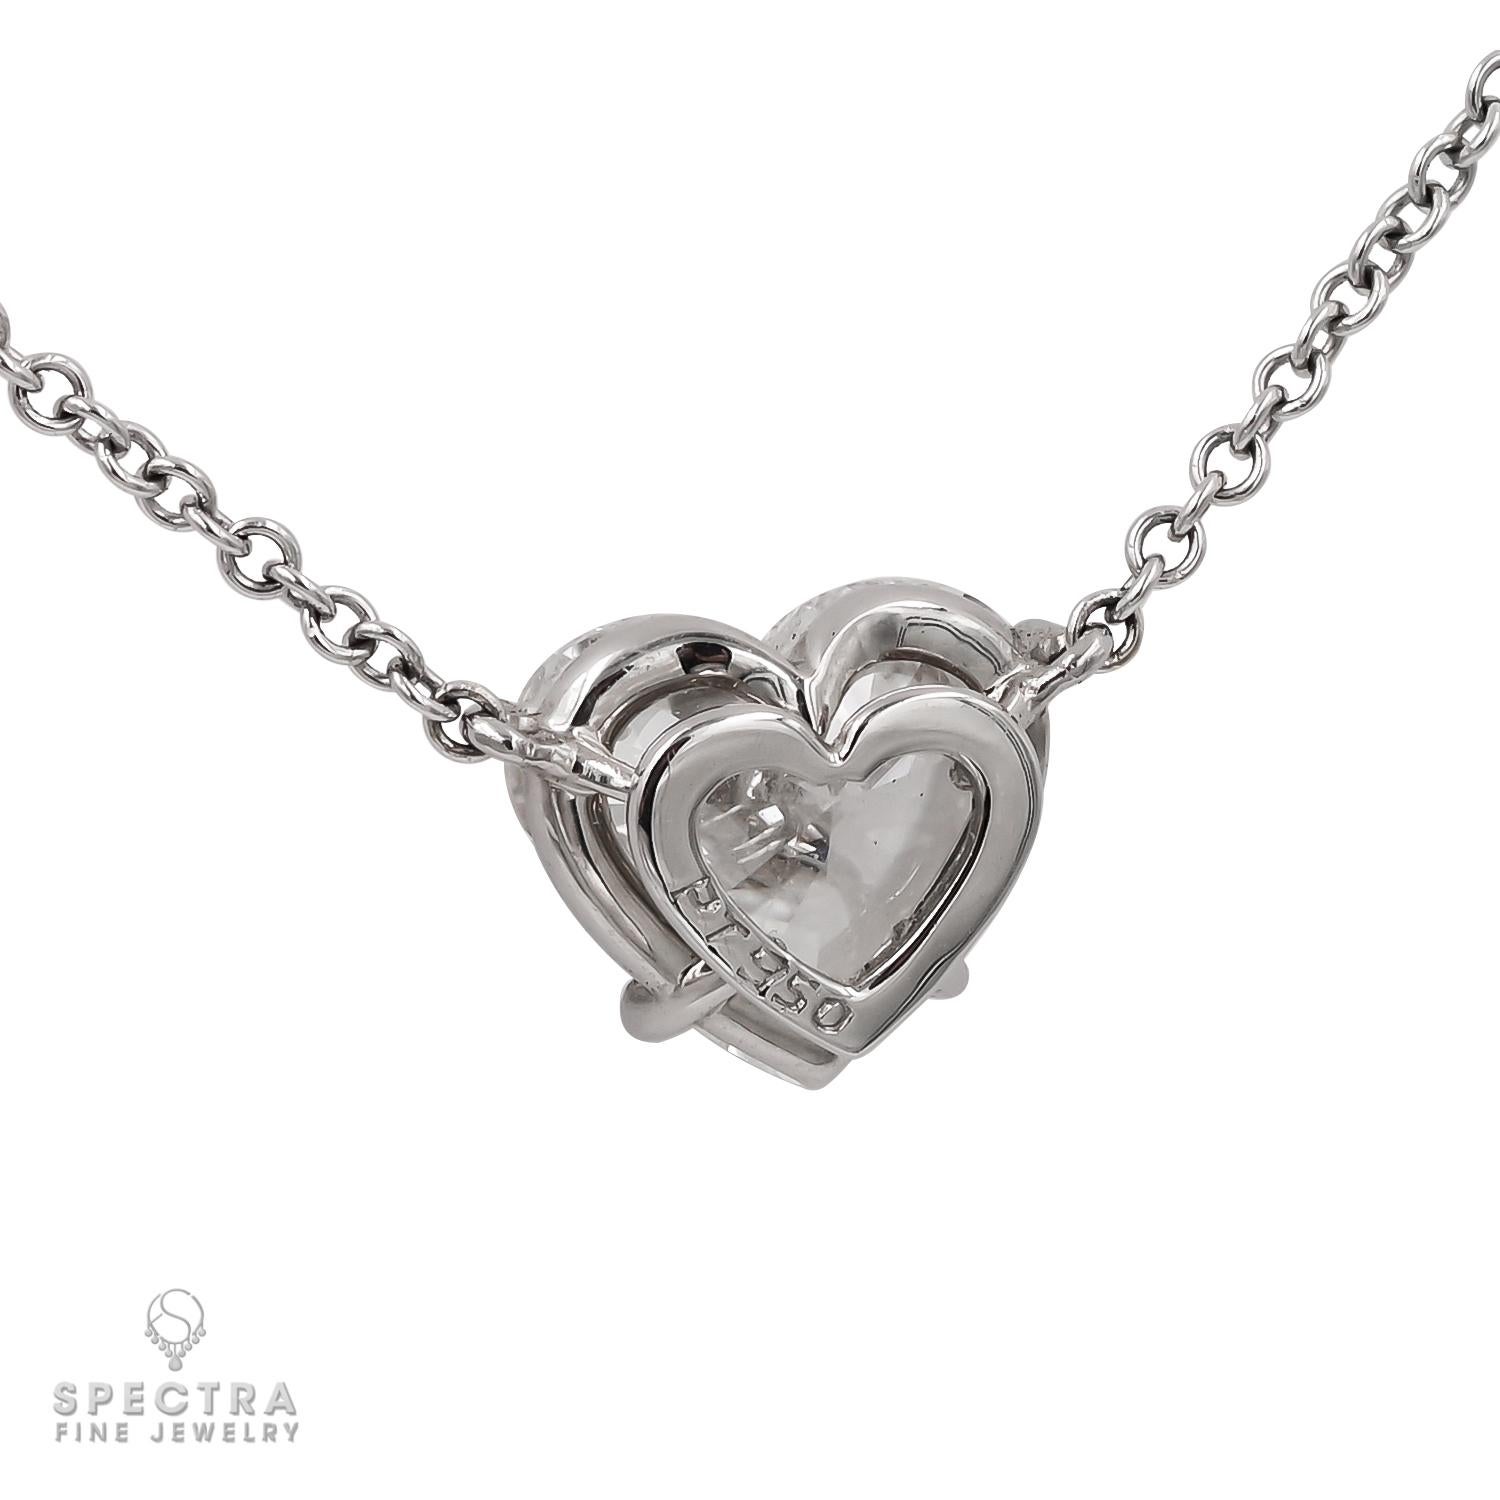 Heart Cut Spectra Fine Jewelry 2.11 Carat Heart-shape Diamond Pendant Necklace For Sale